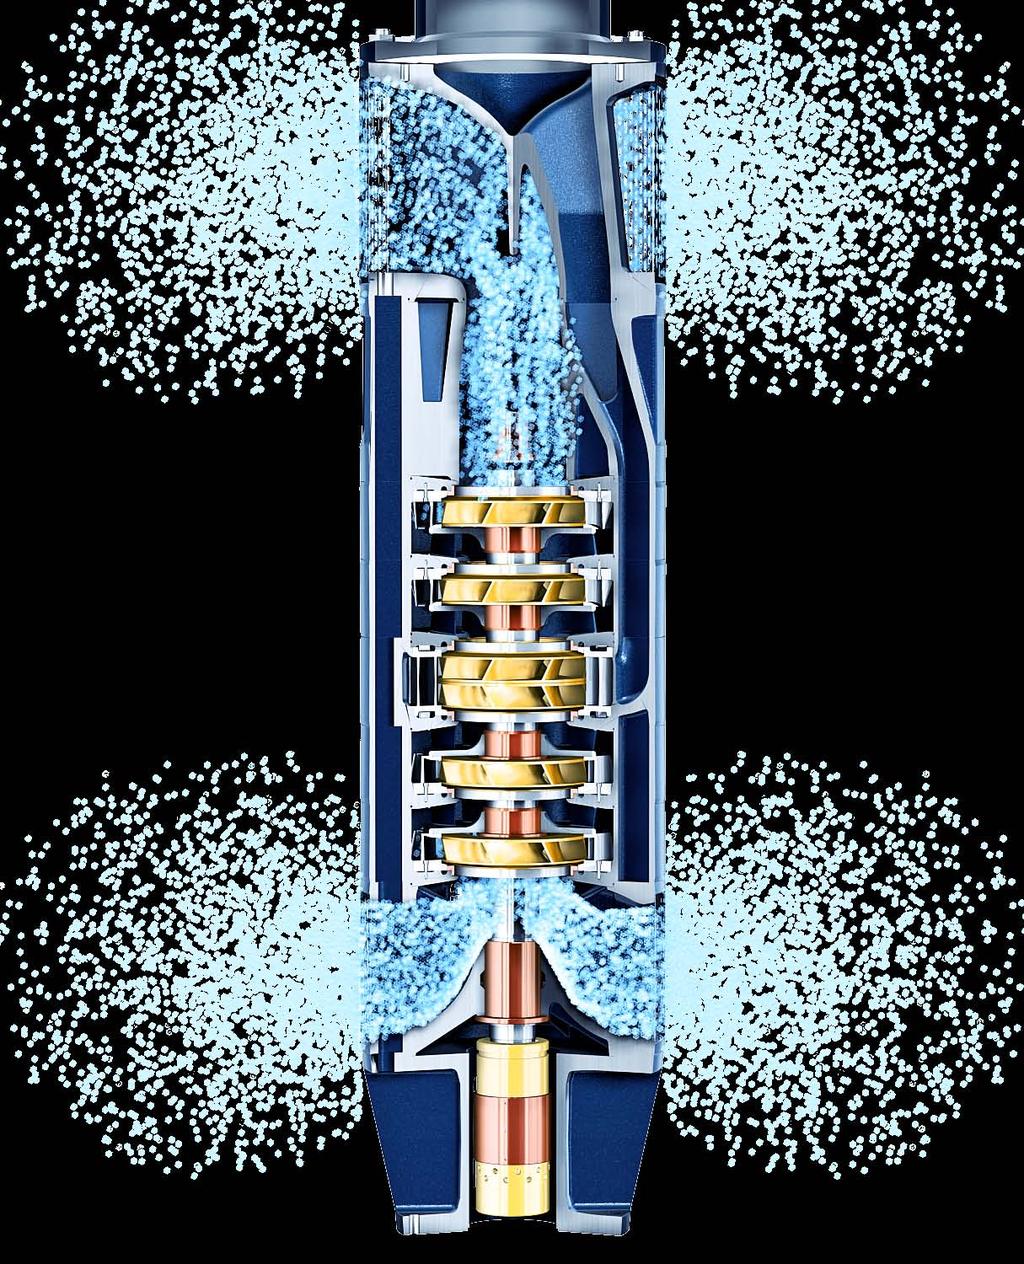 Bombas de doble flujo con motores sumergibles El uso de bombas de succión simple con motor sumergible para bombear enormes volúmenes de líquidos o extraerlos de grandes profundidades somete a la